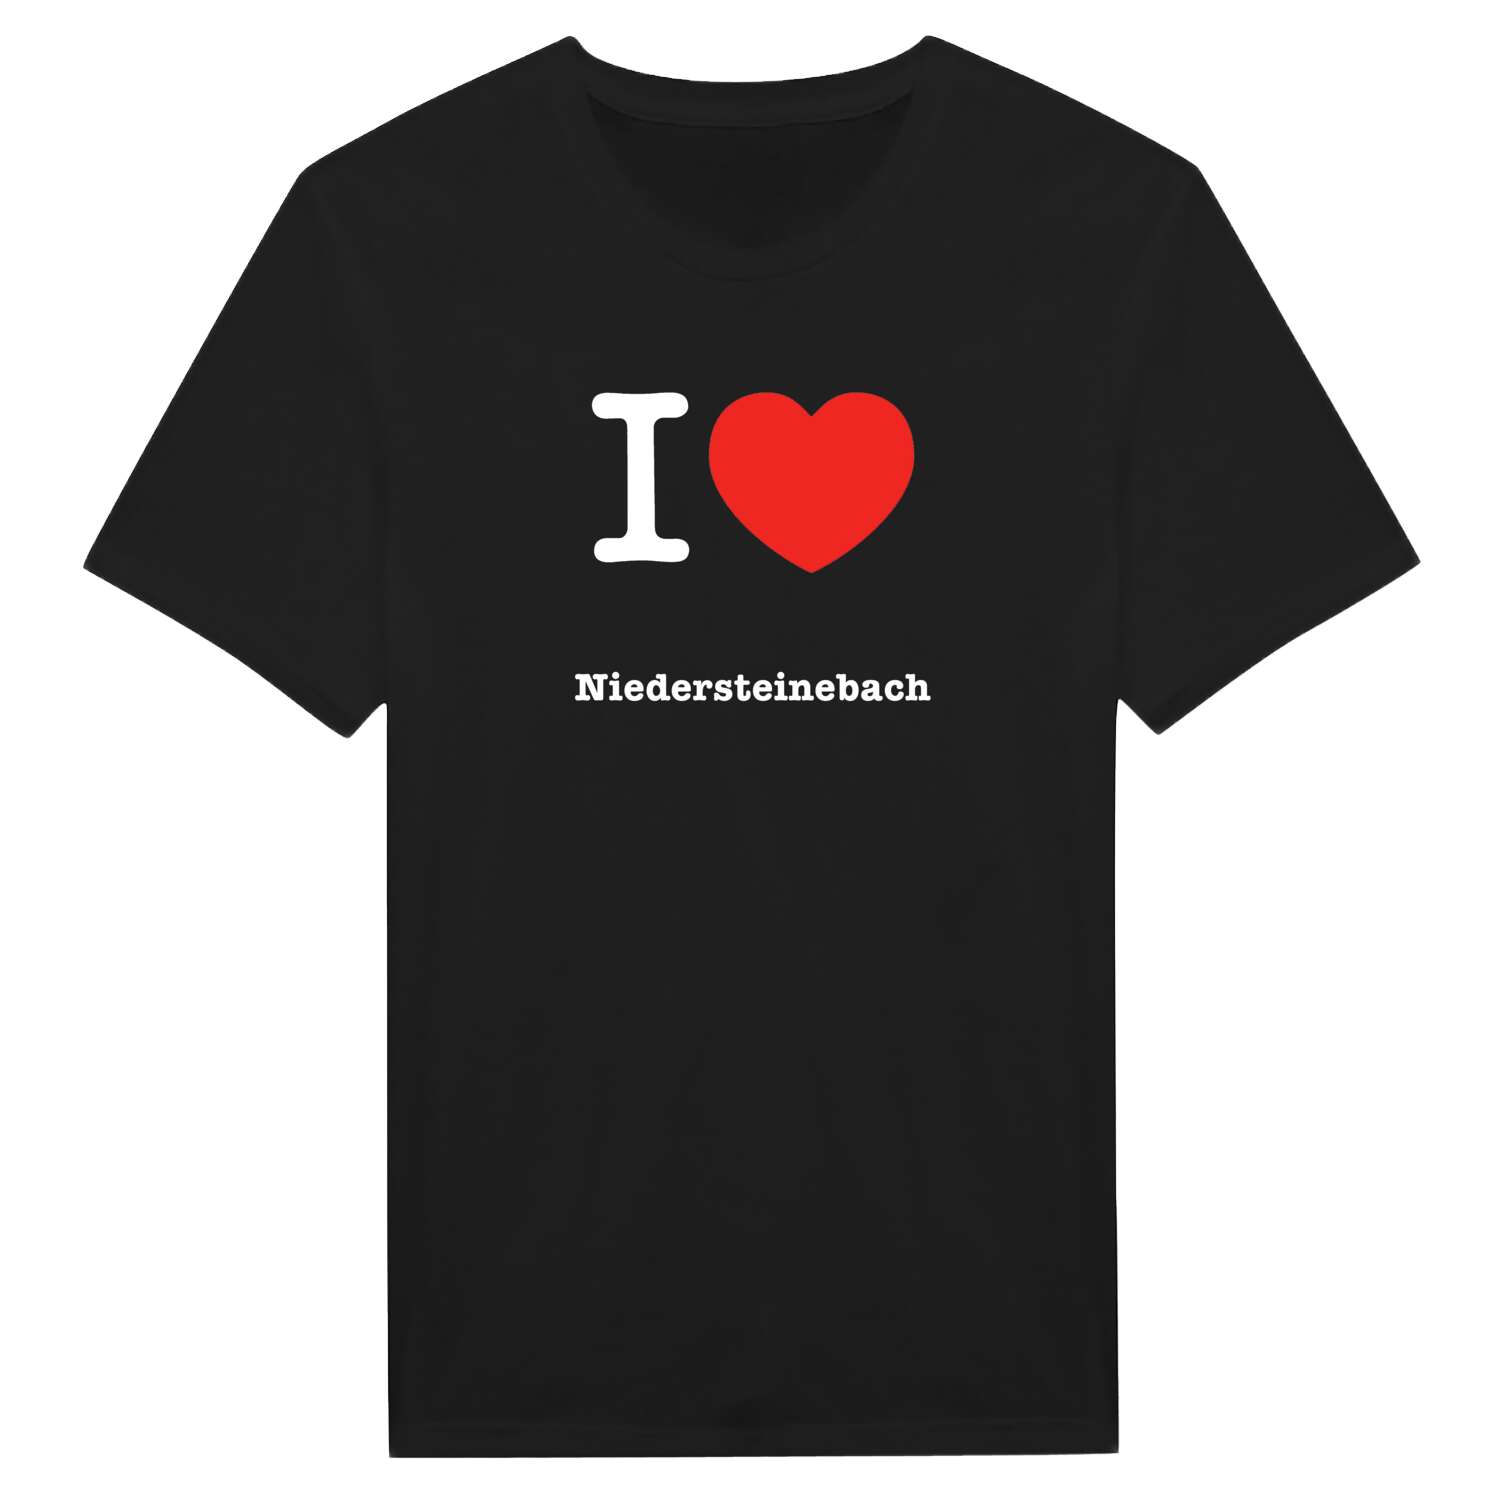 Niedersteinebach T-Shirt »I love«